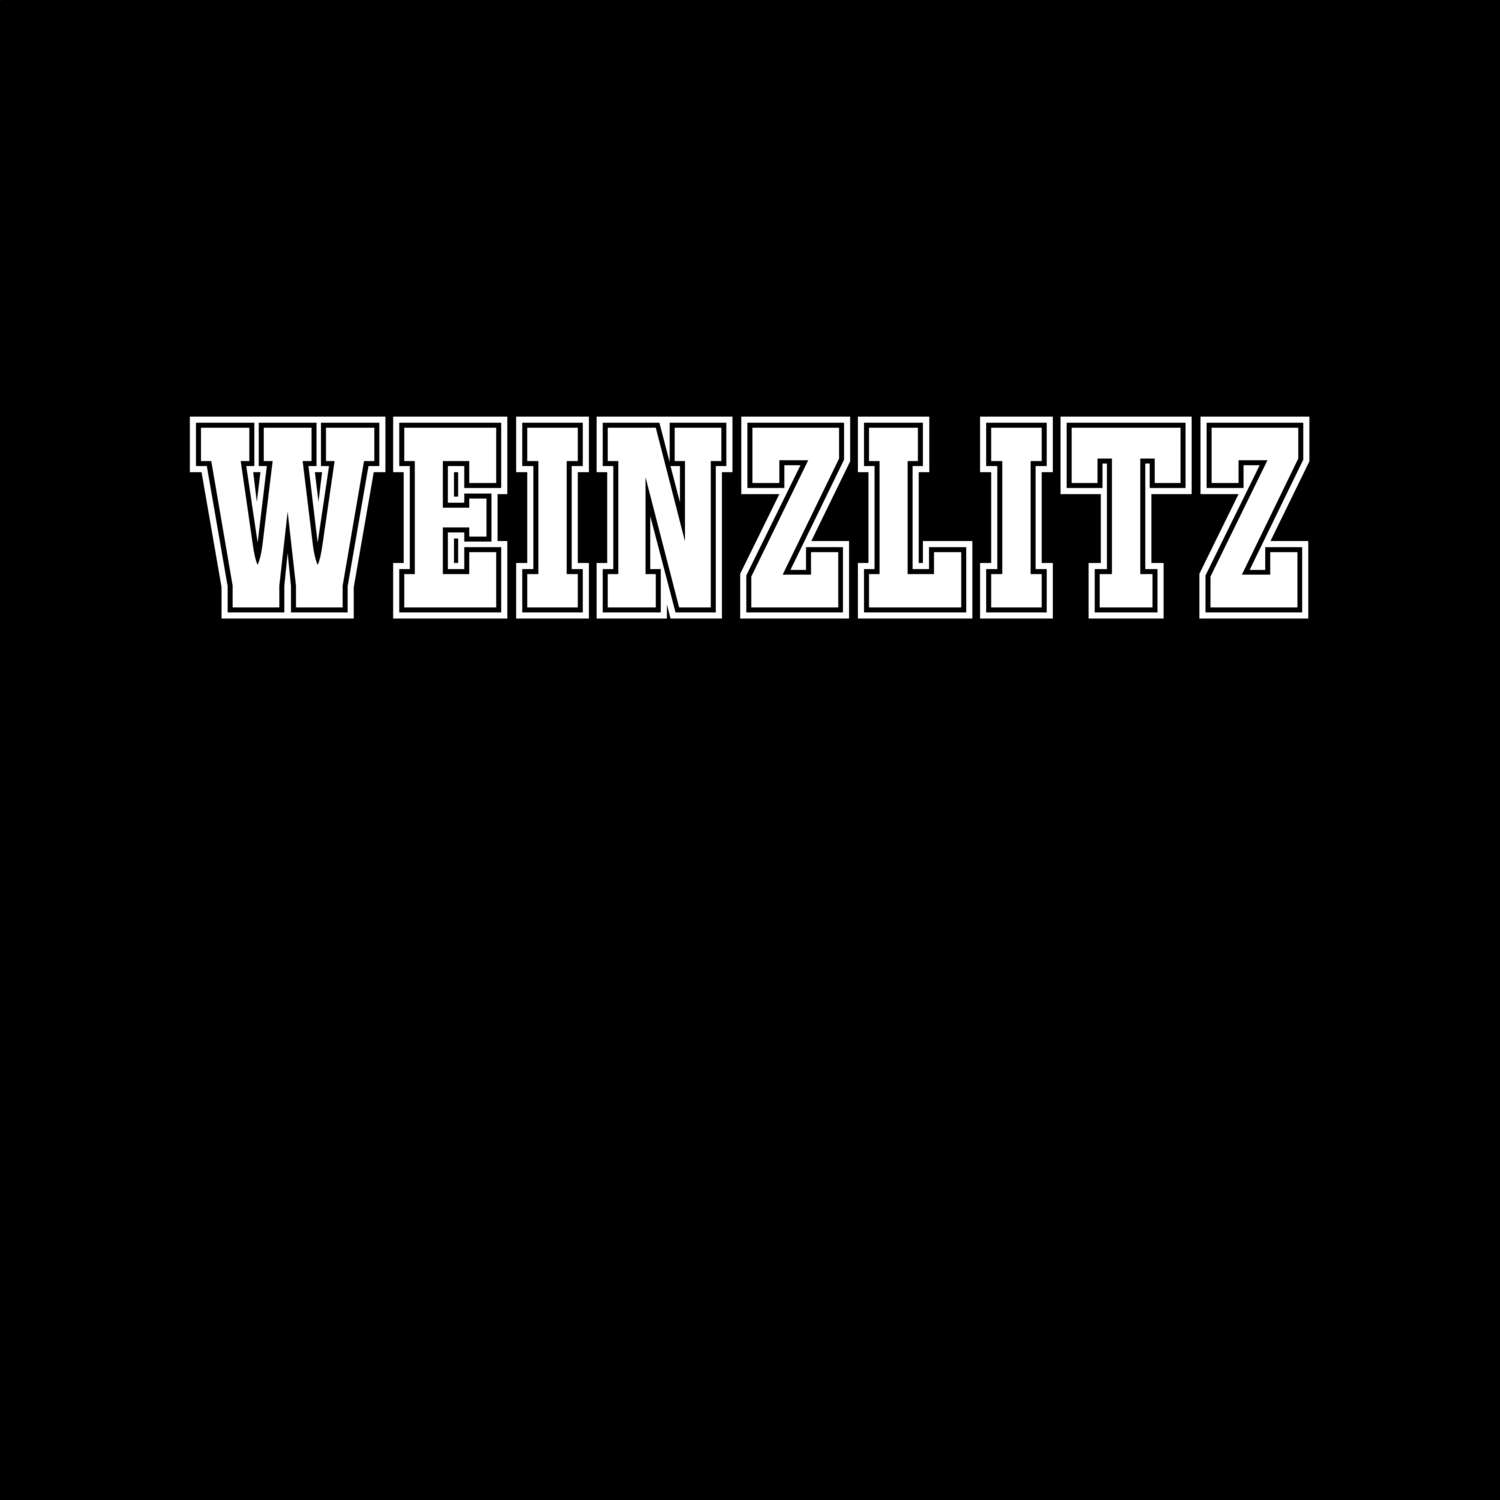 Weinzlitz T-Shirt »Classic«